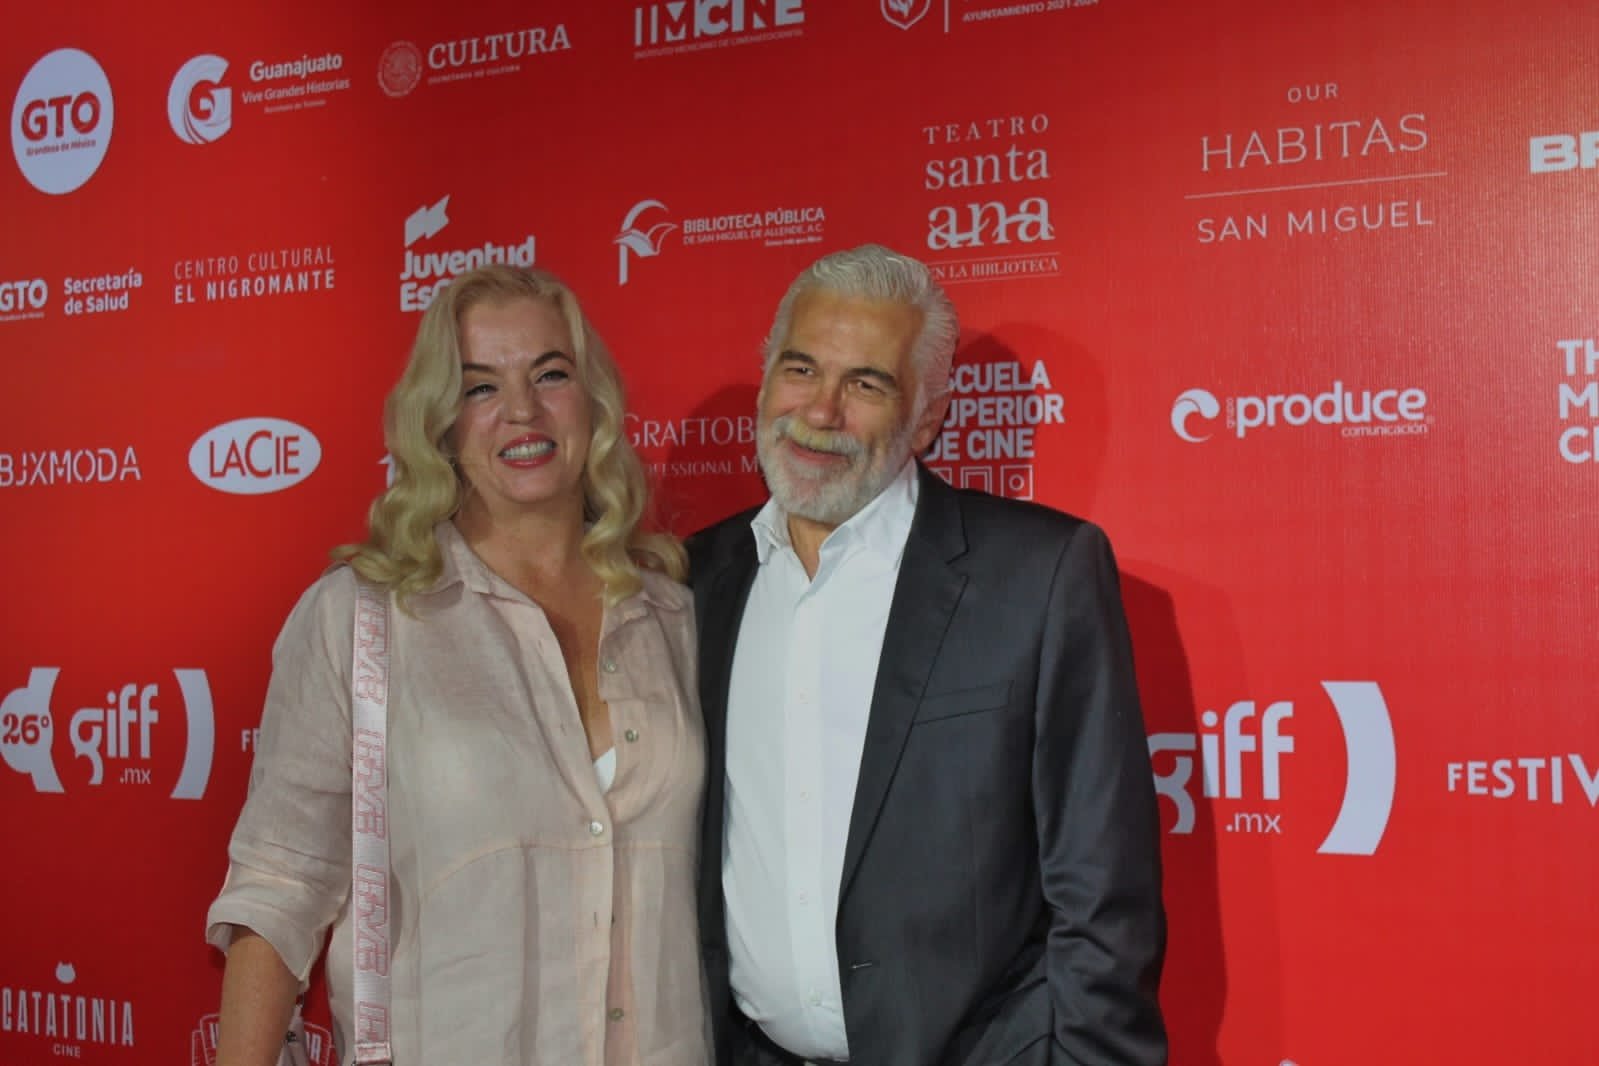 La cátedra es de Estrada, el GIFF conmemora al polemico cineasta.